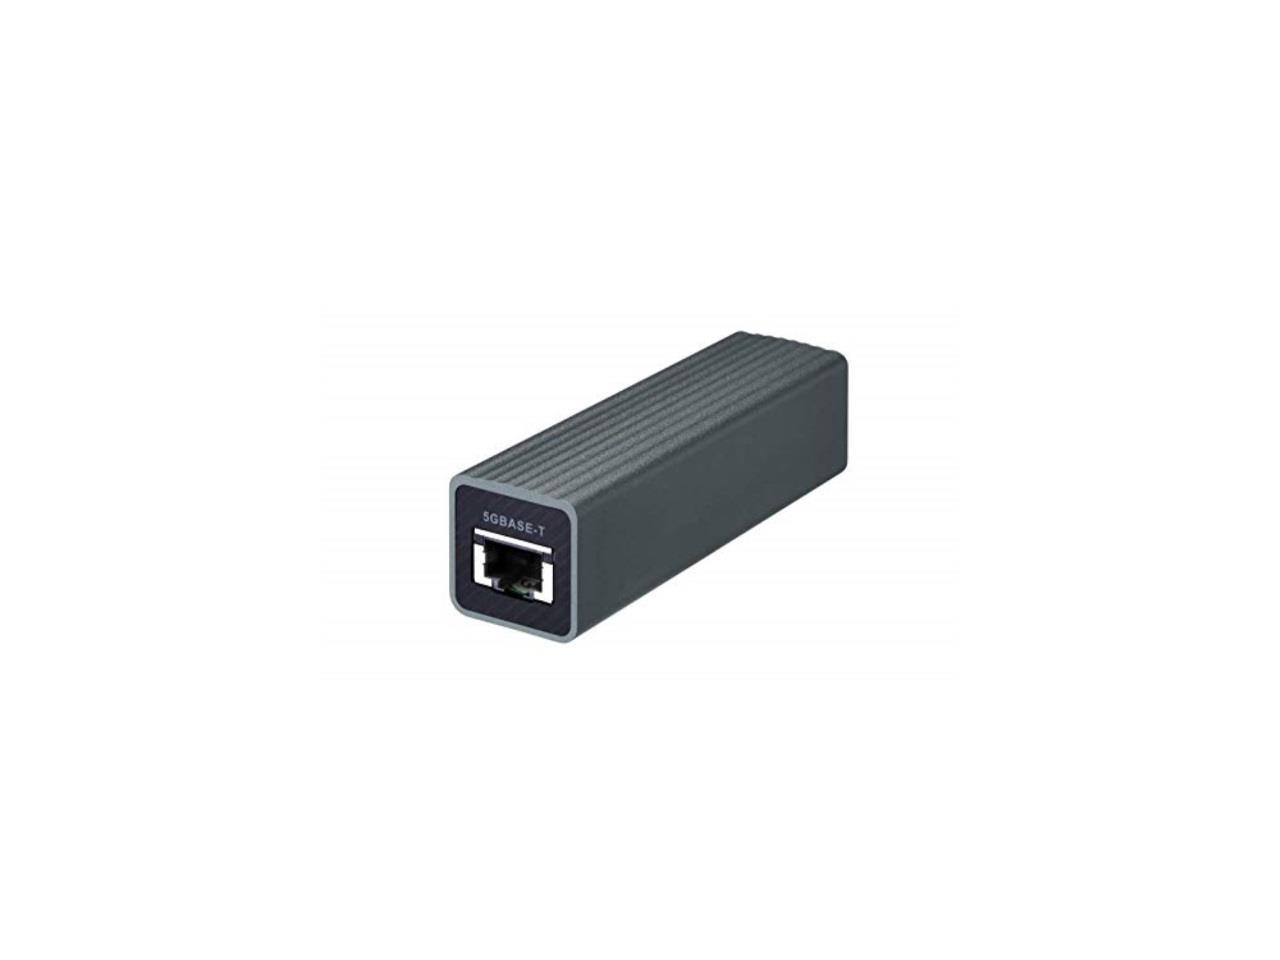 QNAP QNA-UC5G1T USB 3.0 to Single Port RJ45 5 GbE / 2.5 GbE / 1 GbE